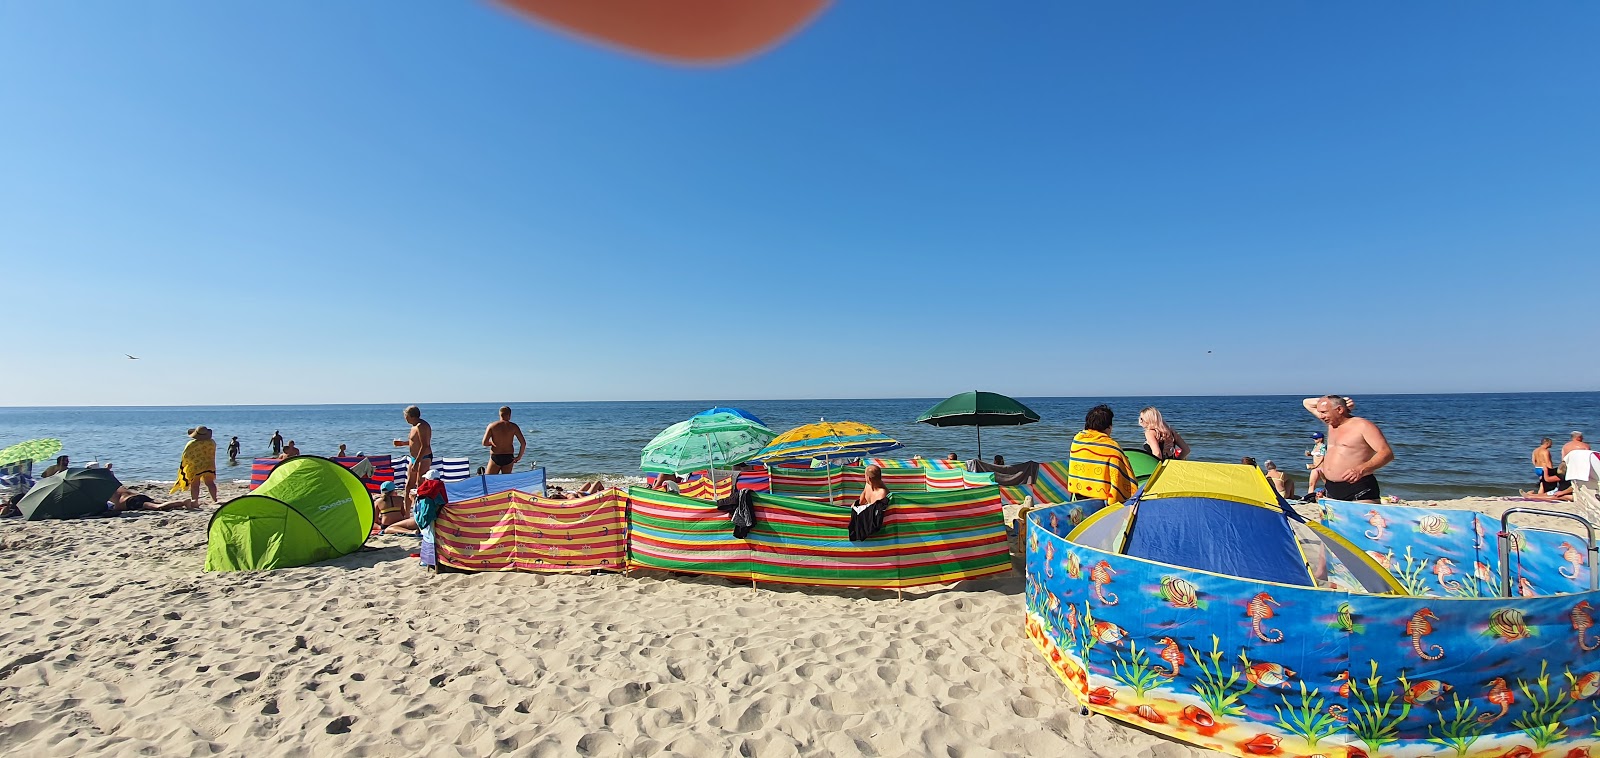 Photo de Krynica Morska beach - endroit populaire parmi les connaisseurs de la détente